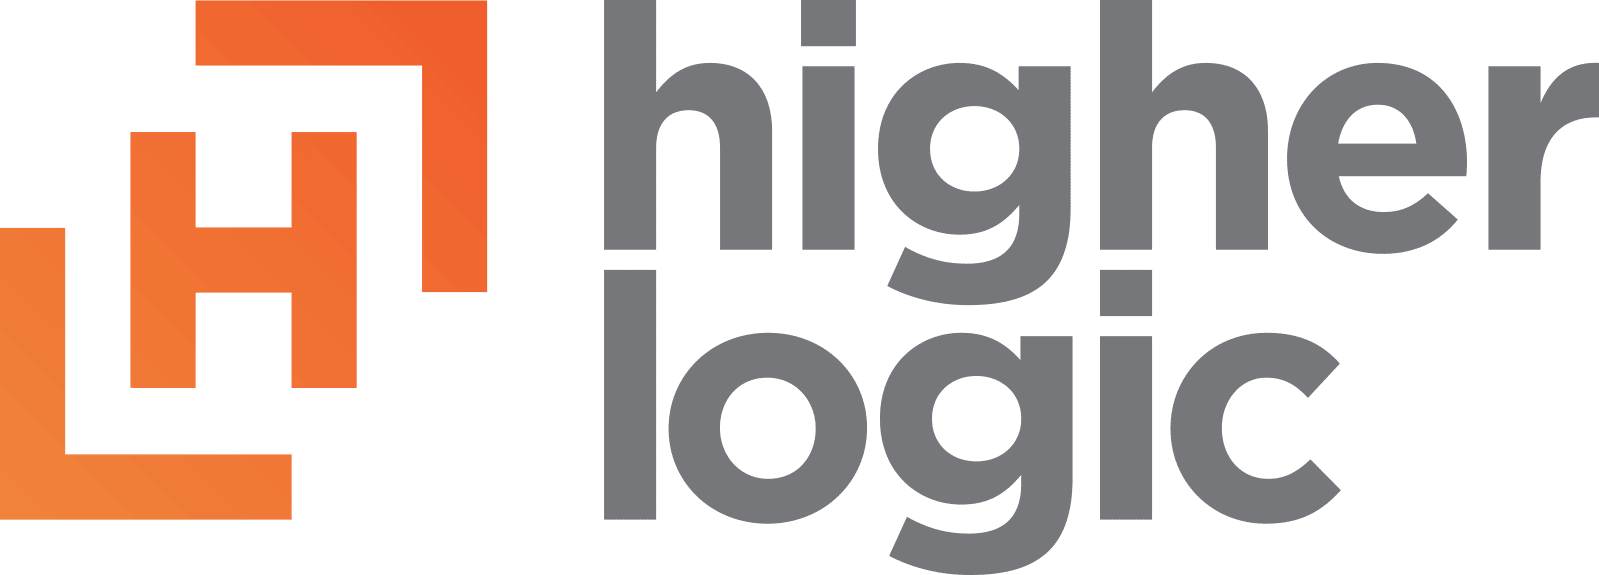 HigherLogic_logo_stacked (1)